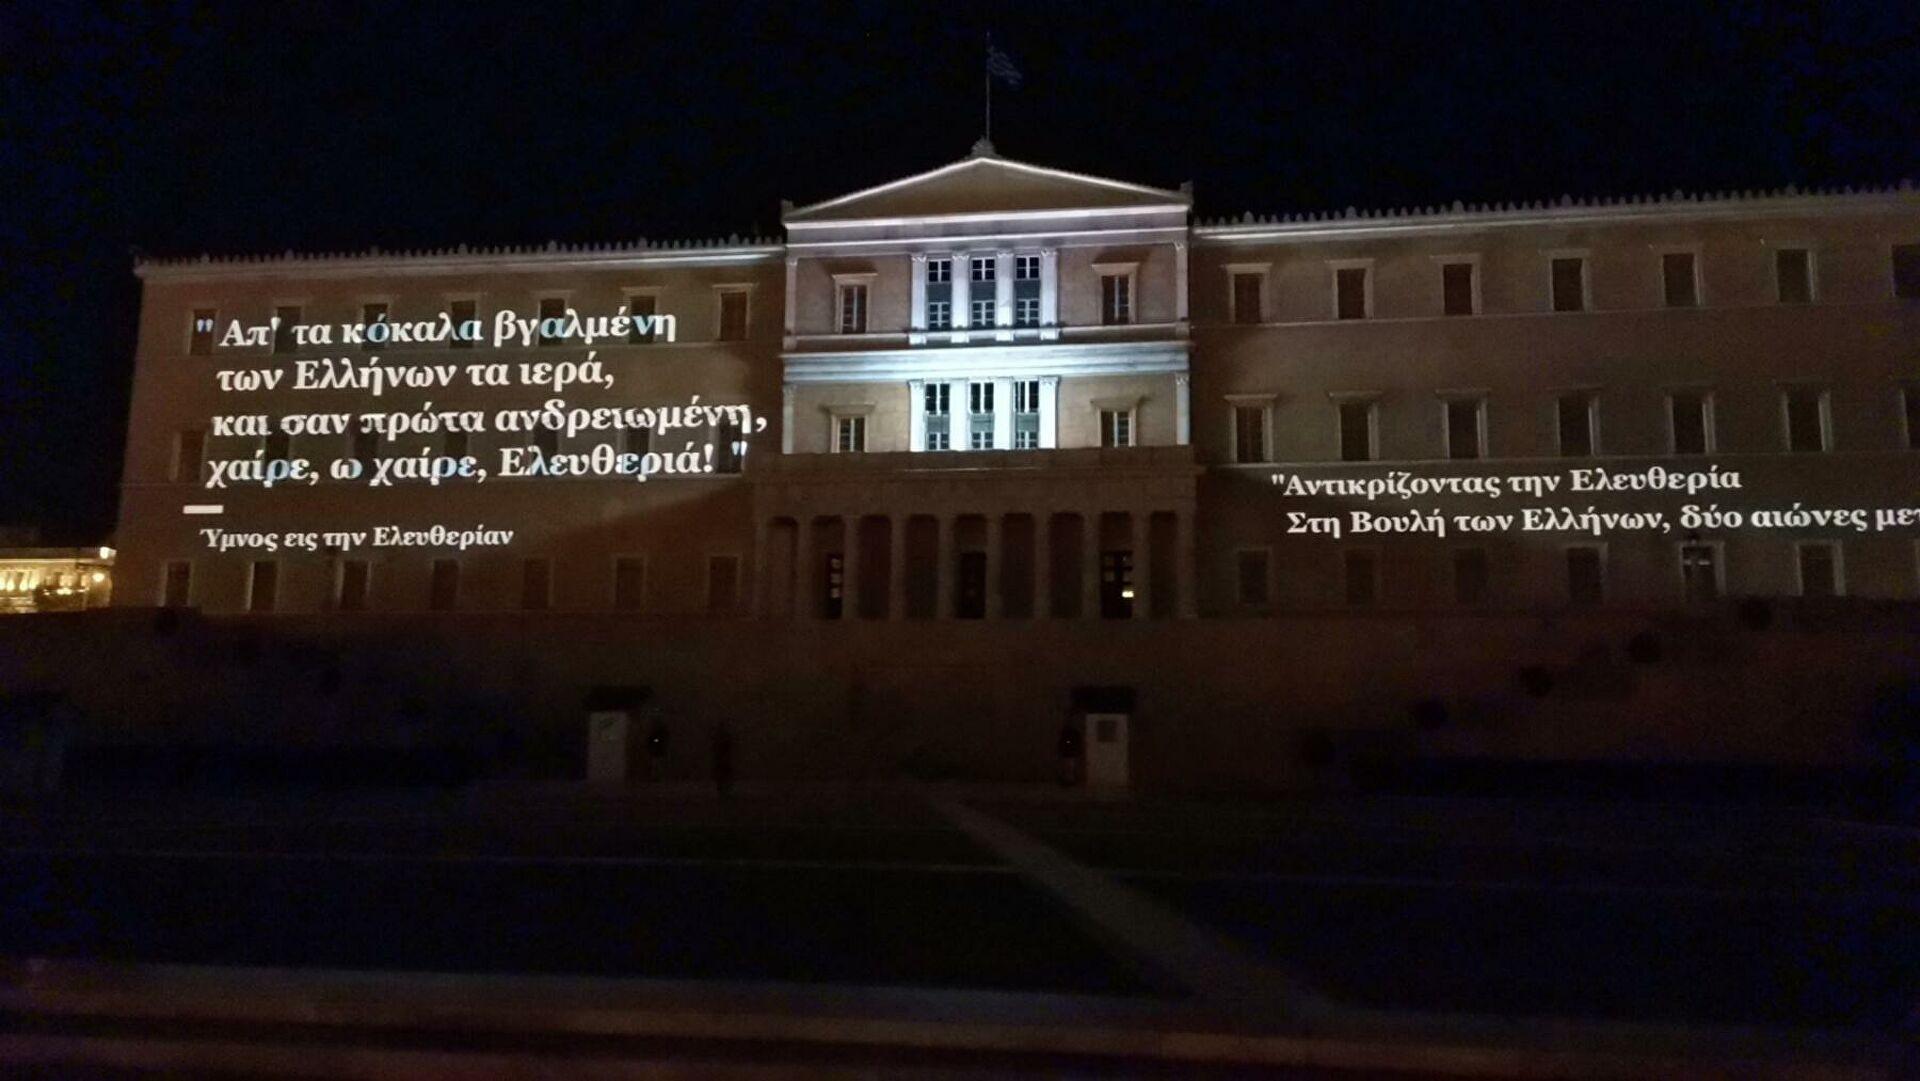 Η Ιστορία της Ελληνικής επανάστασης ζωντανεύει στην Βουλή